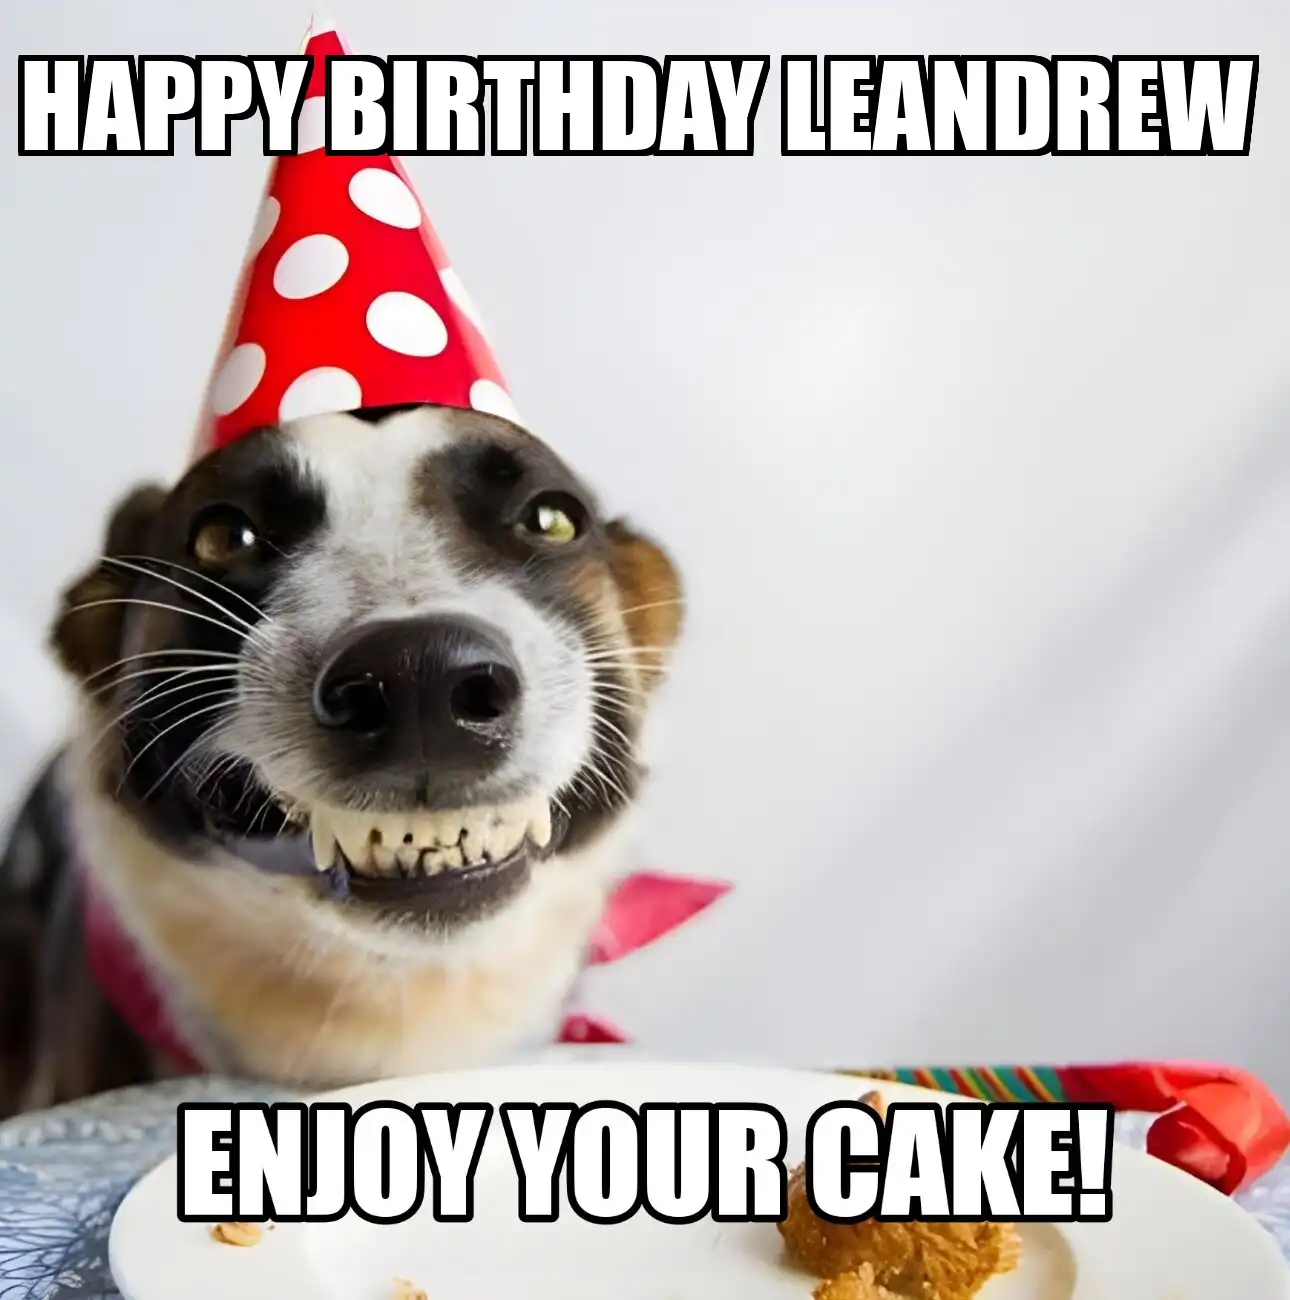 Happy Birthday Leandrew Enjoy Your Cake Dog Meme